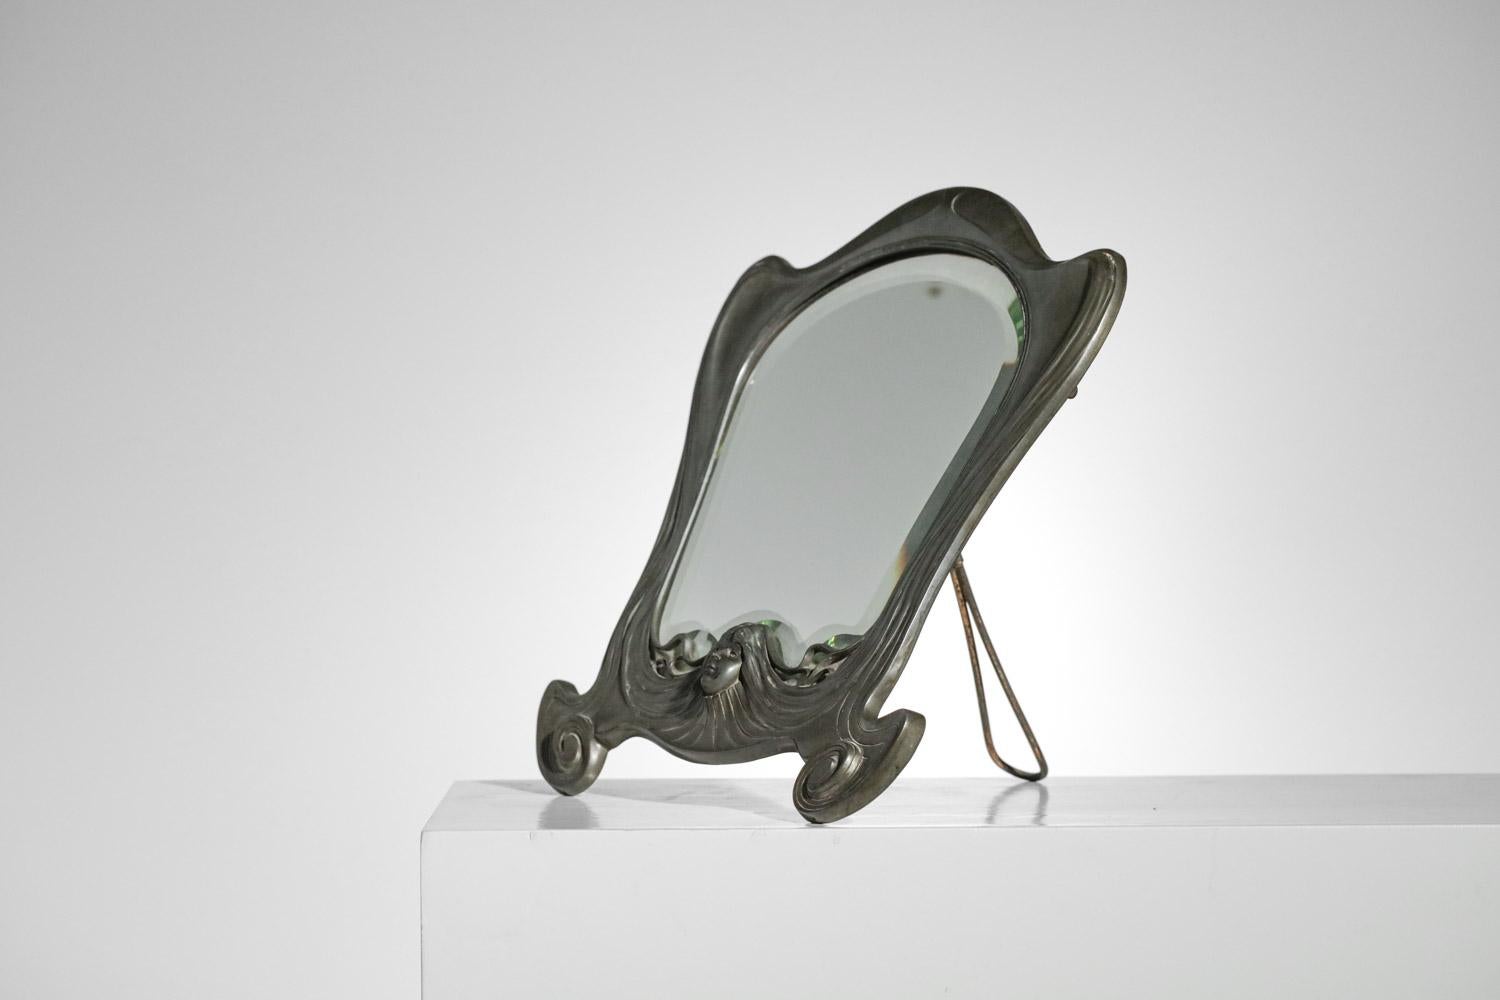 Rare miroir art nouveau des années 20 de la fabrique allemande Orivit. Structure du miroir en étain massif et miroir. Très beau détail de fabrication sur l'étain avec le visage d'une femme en 3D dans un style typiquement art nouveau. Très bel état